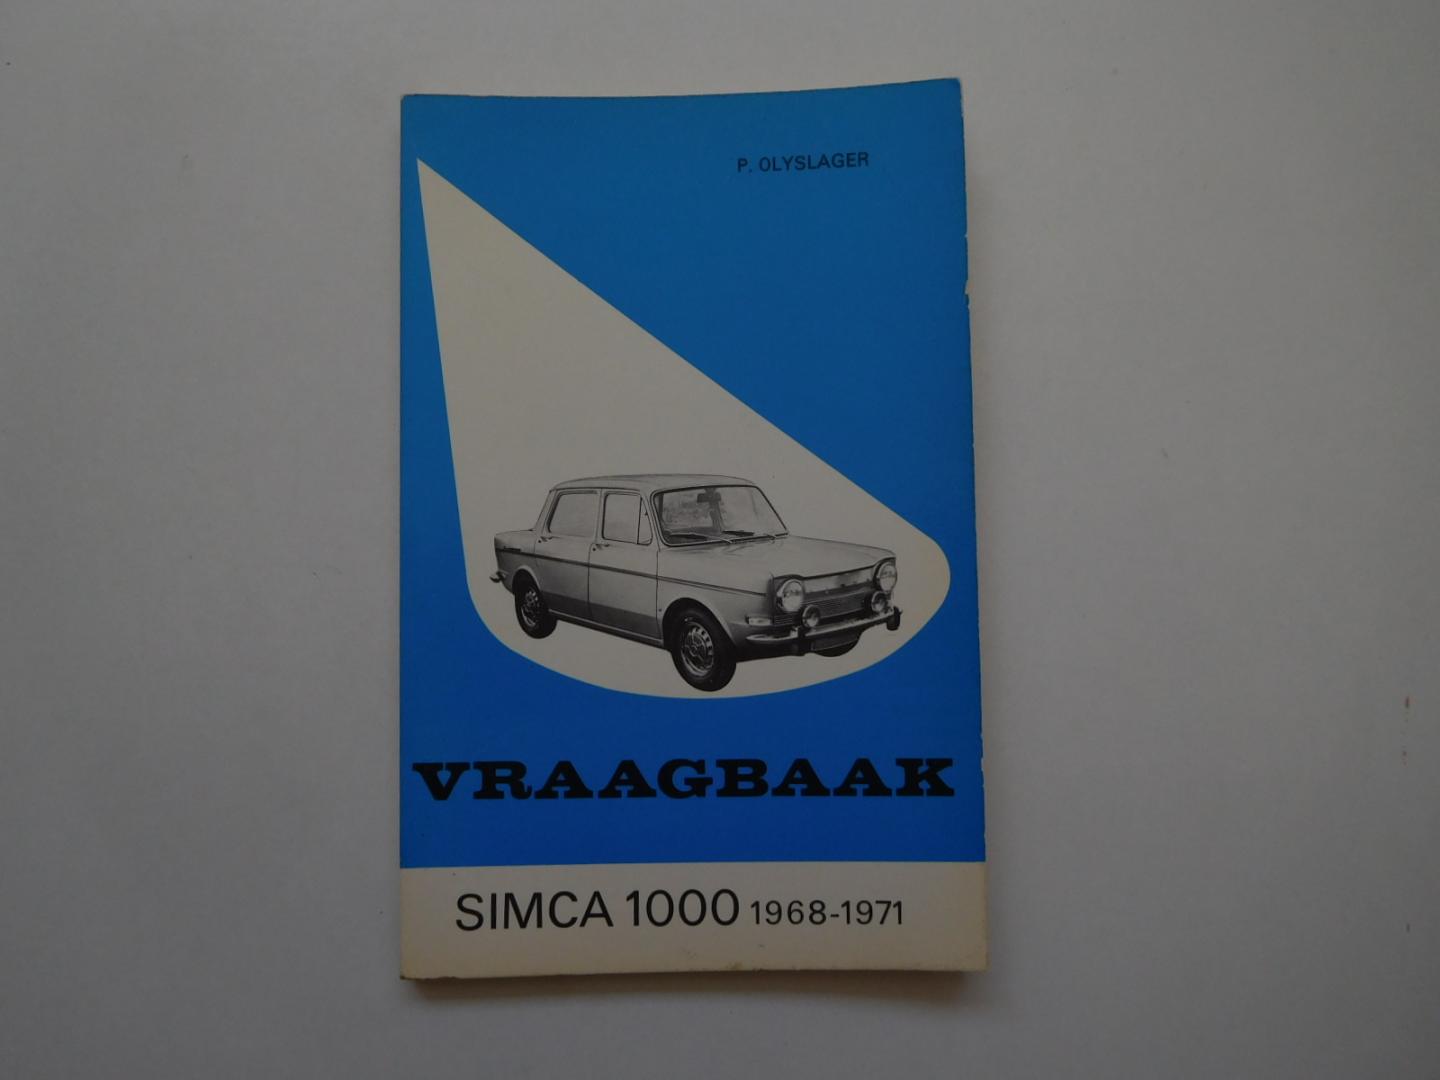 Olyslager, p. - Vraagbaak Simca 1000, types L, LS, GL, GLS, Special, Rallye, 1968-1971